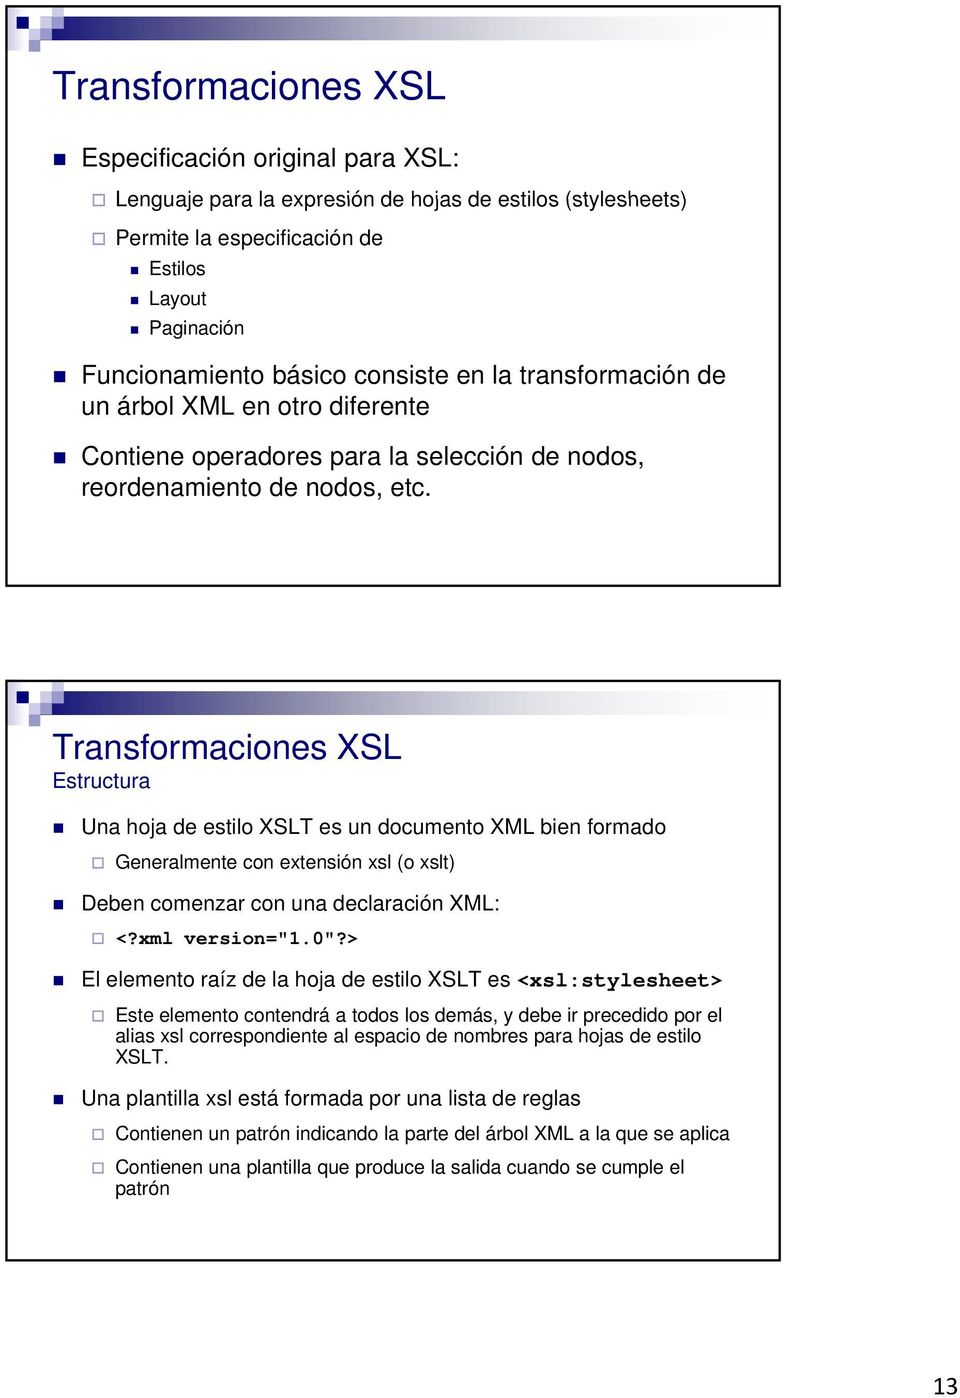 Transformaciones XSL Estructura Una hoja de estilo XSLT es un documento XML bien formado Generalmente con extensión xsl (o xslt) Deben comenzar con una declaración XML: <?xml version="1.0"?